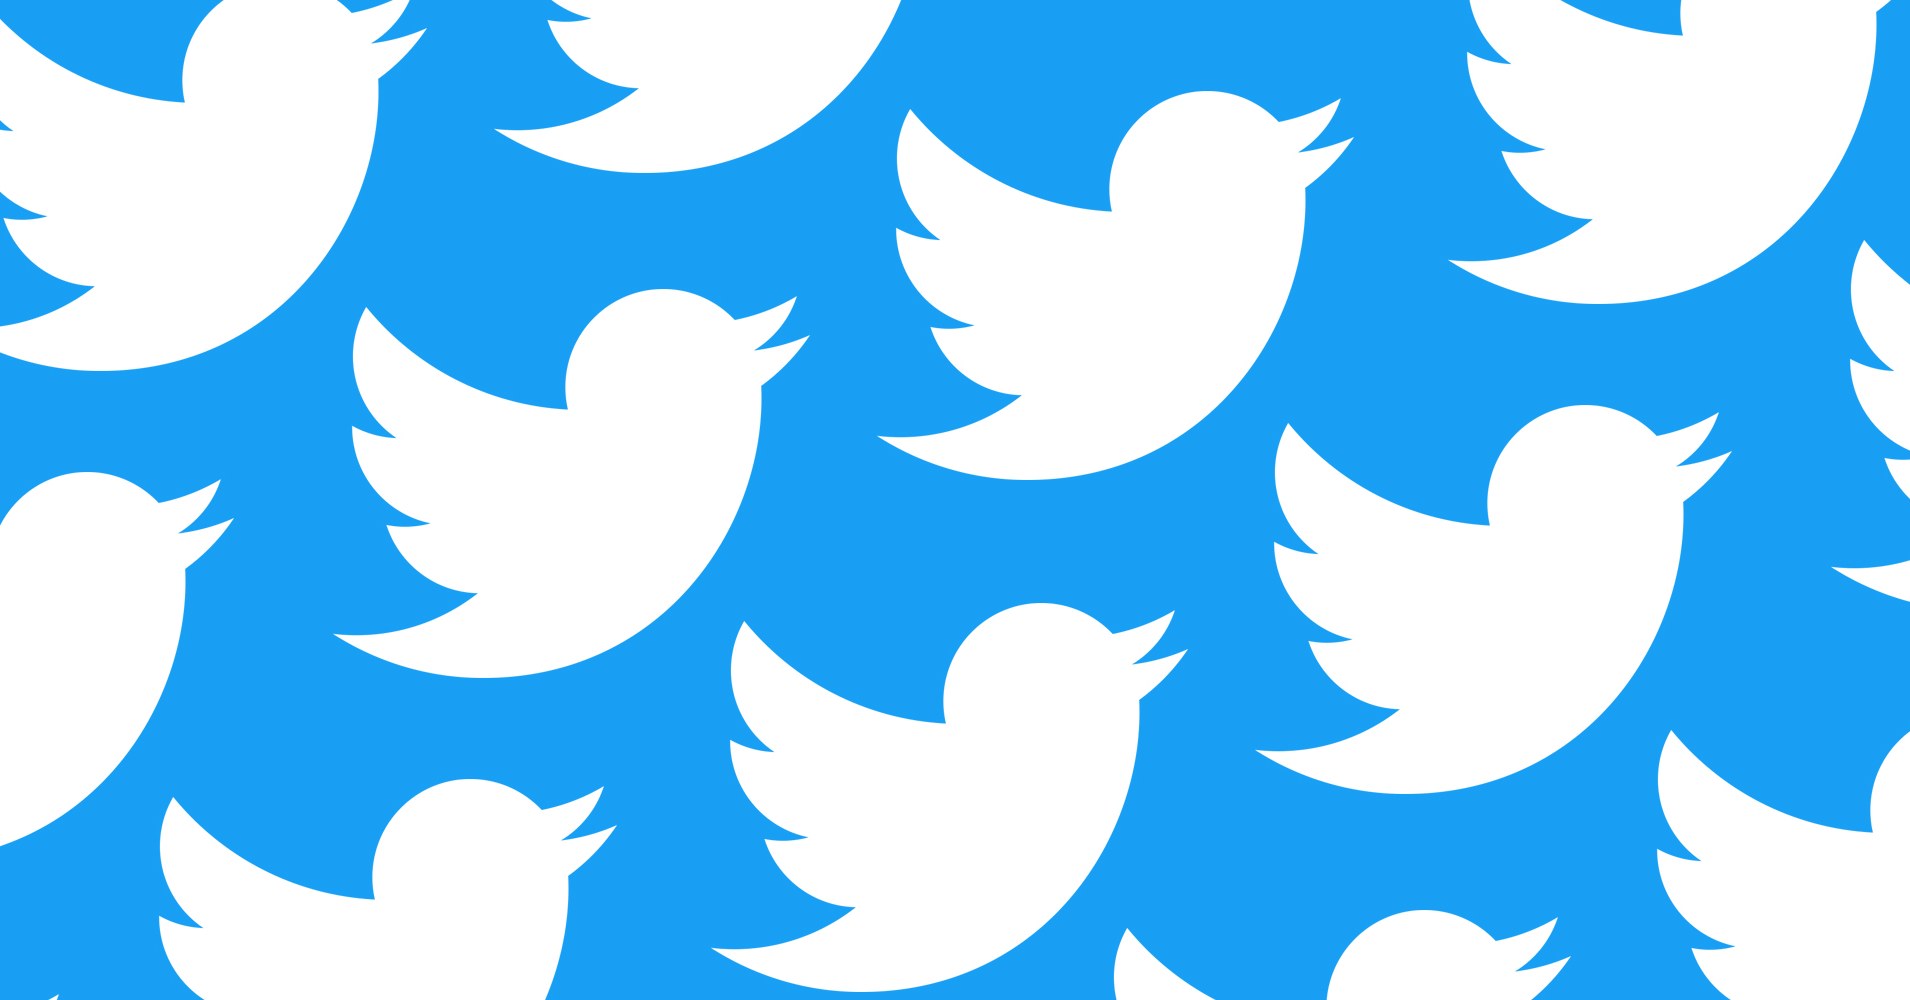 O Twitter é uma das maiores redes sociais do mundo, e com os muitos milhares de utilizadores é normal que se encontrem muitas contas inativas.